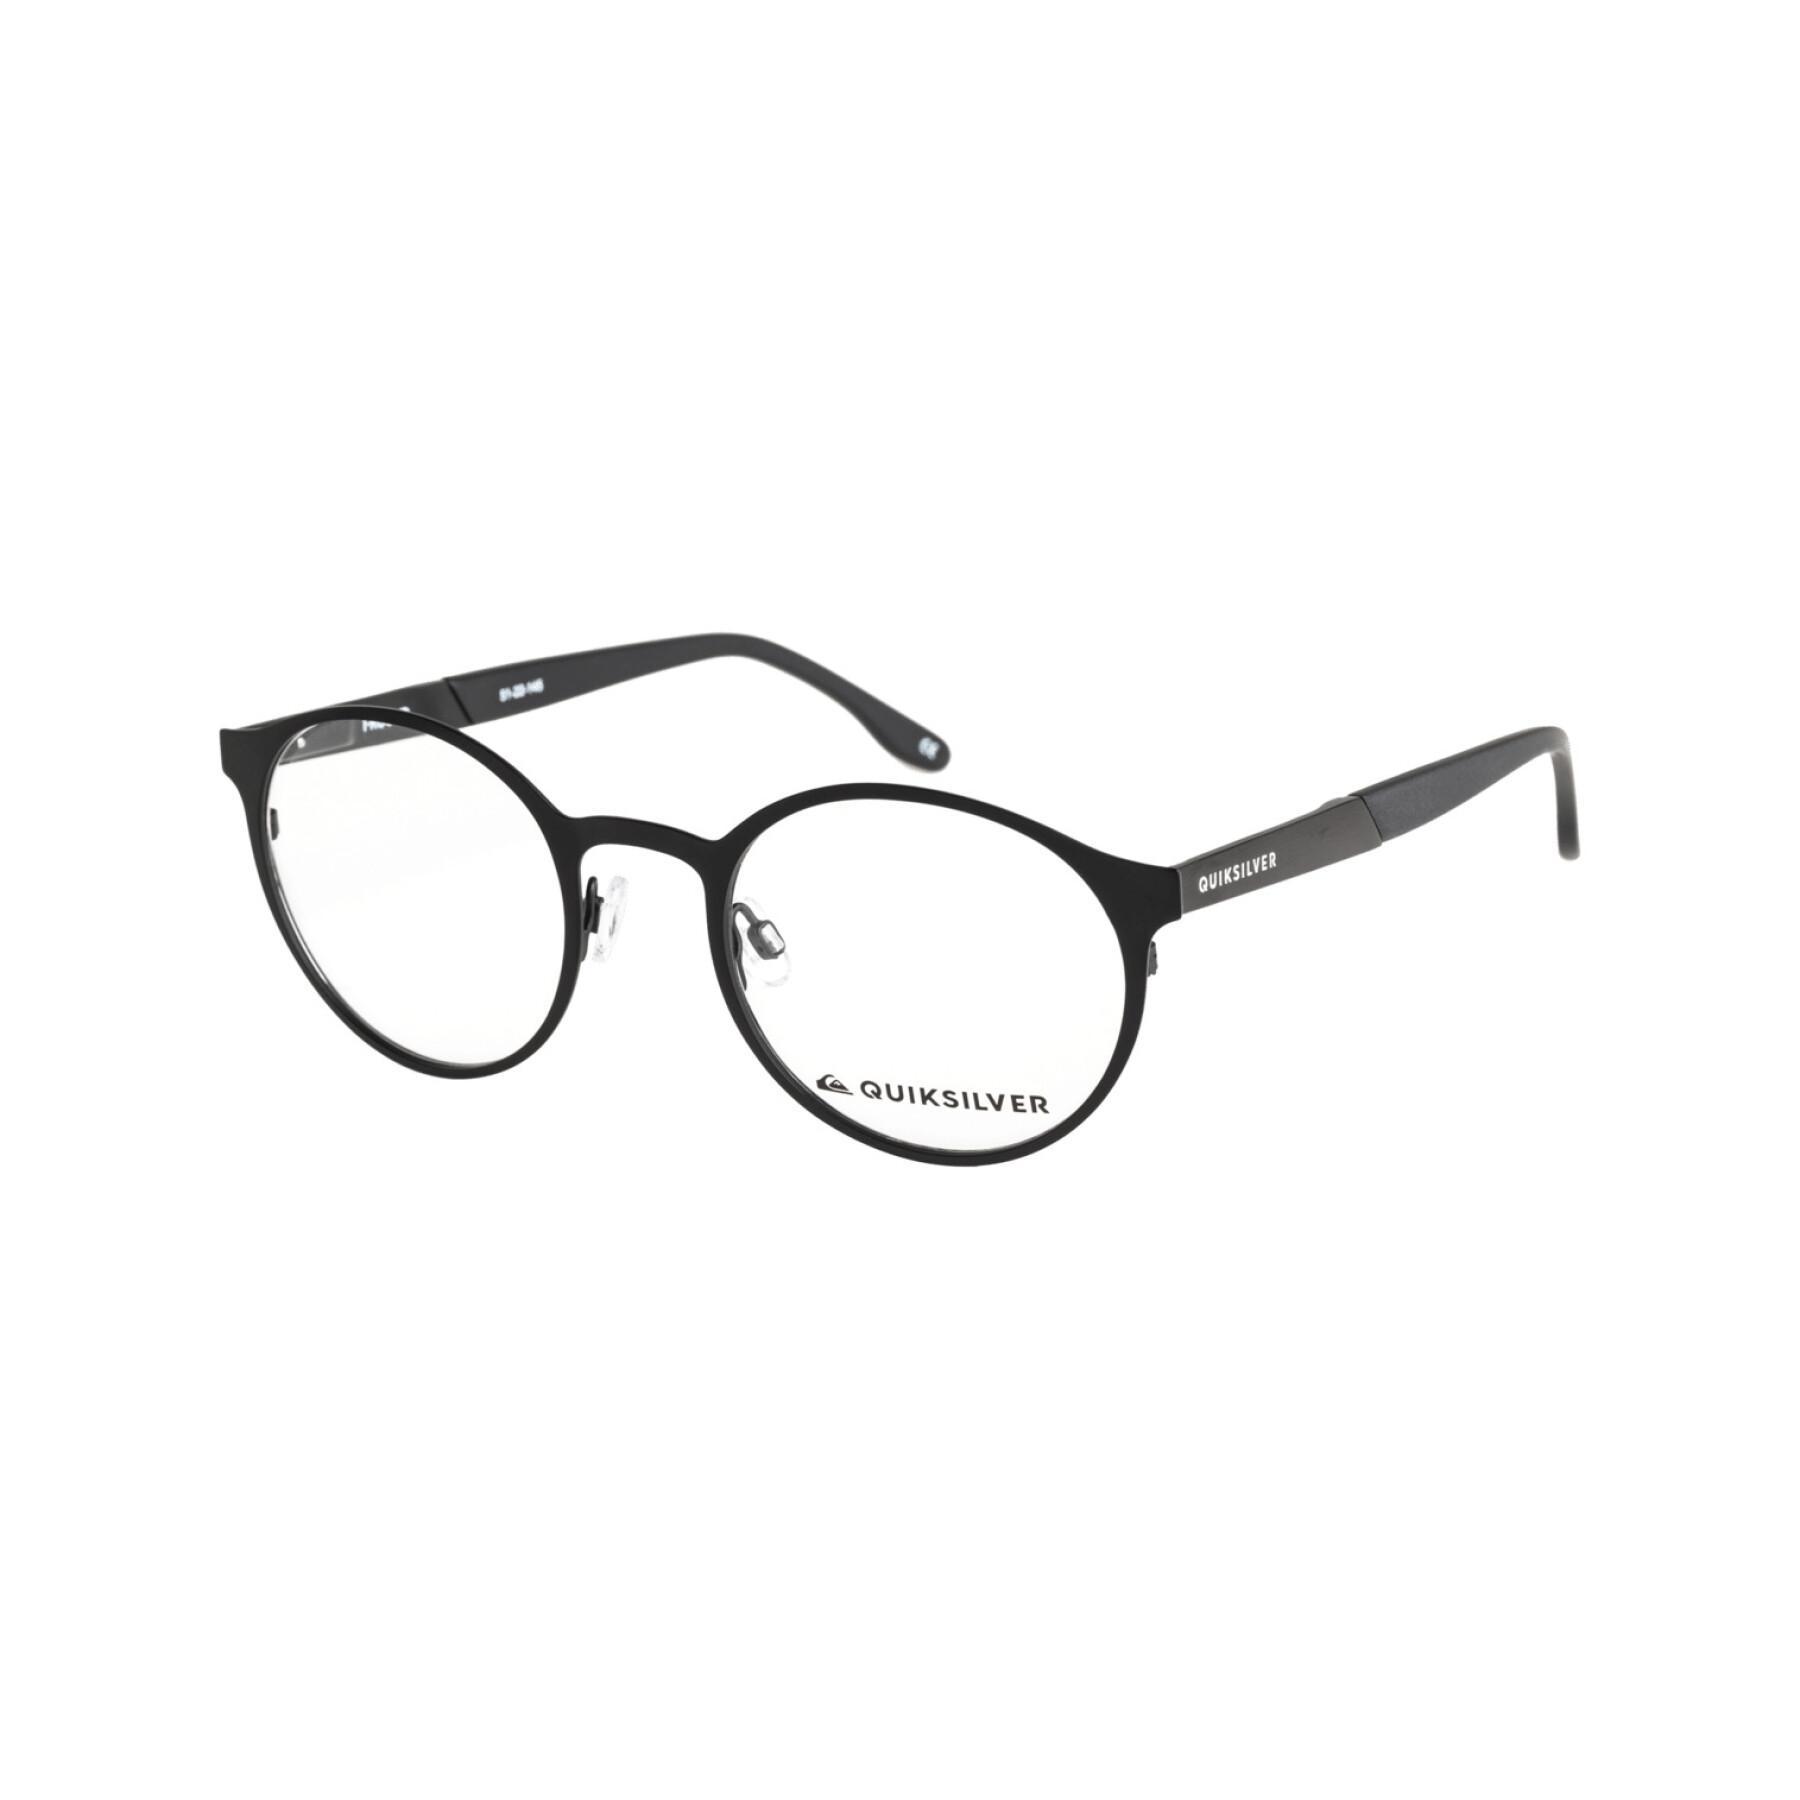 Eyeglasses Quiksilver I-Round - Fashion Accessories - Accessories | Sonnenbrillen